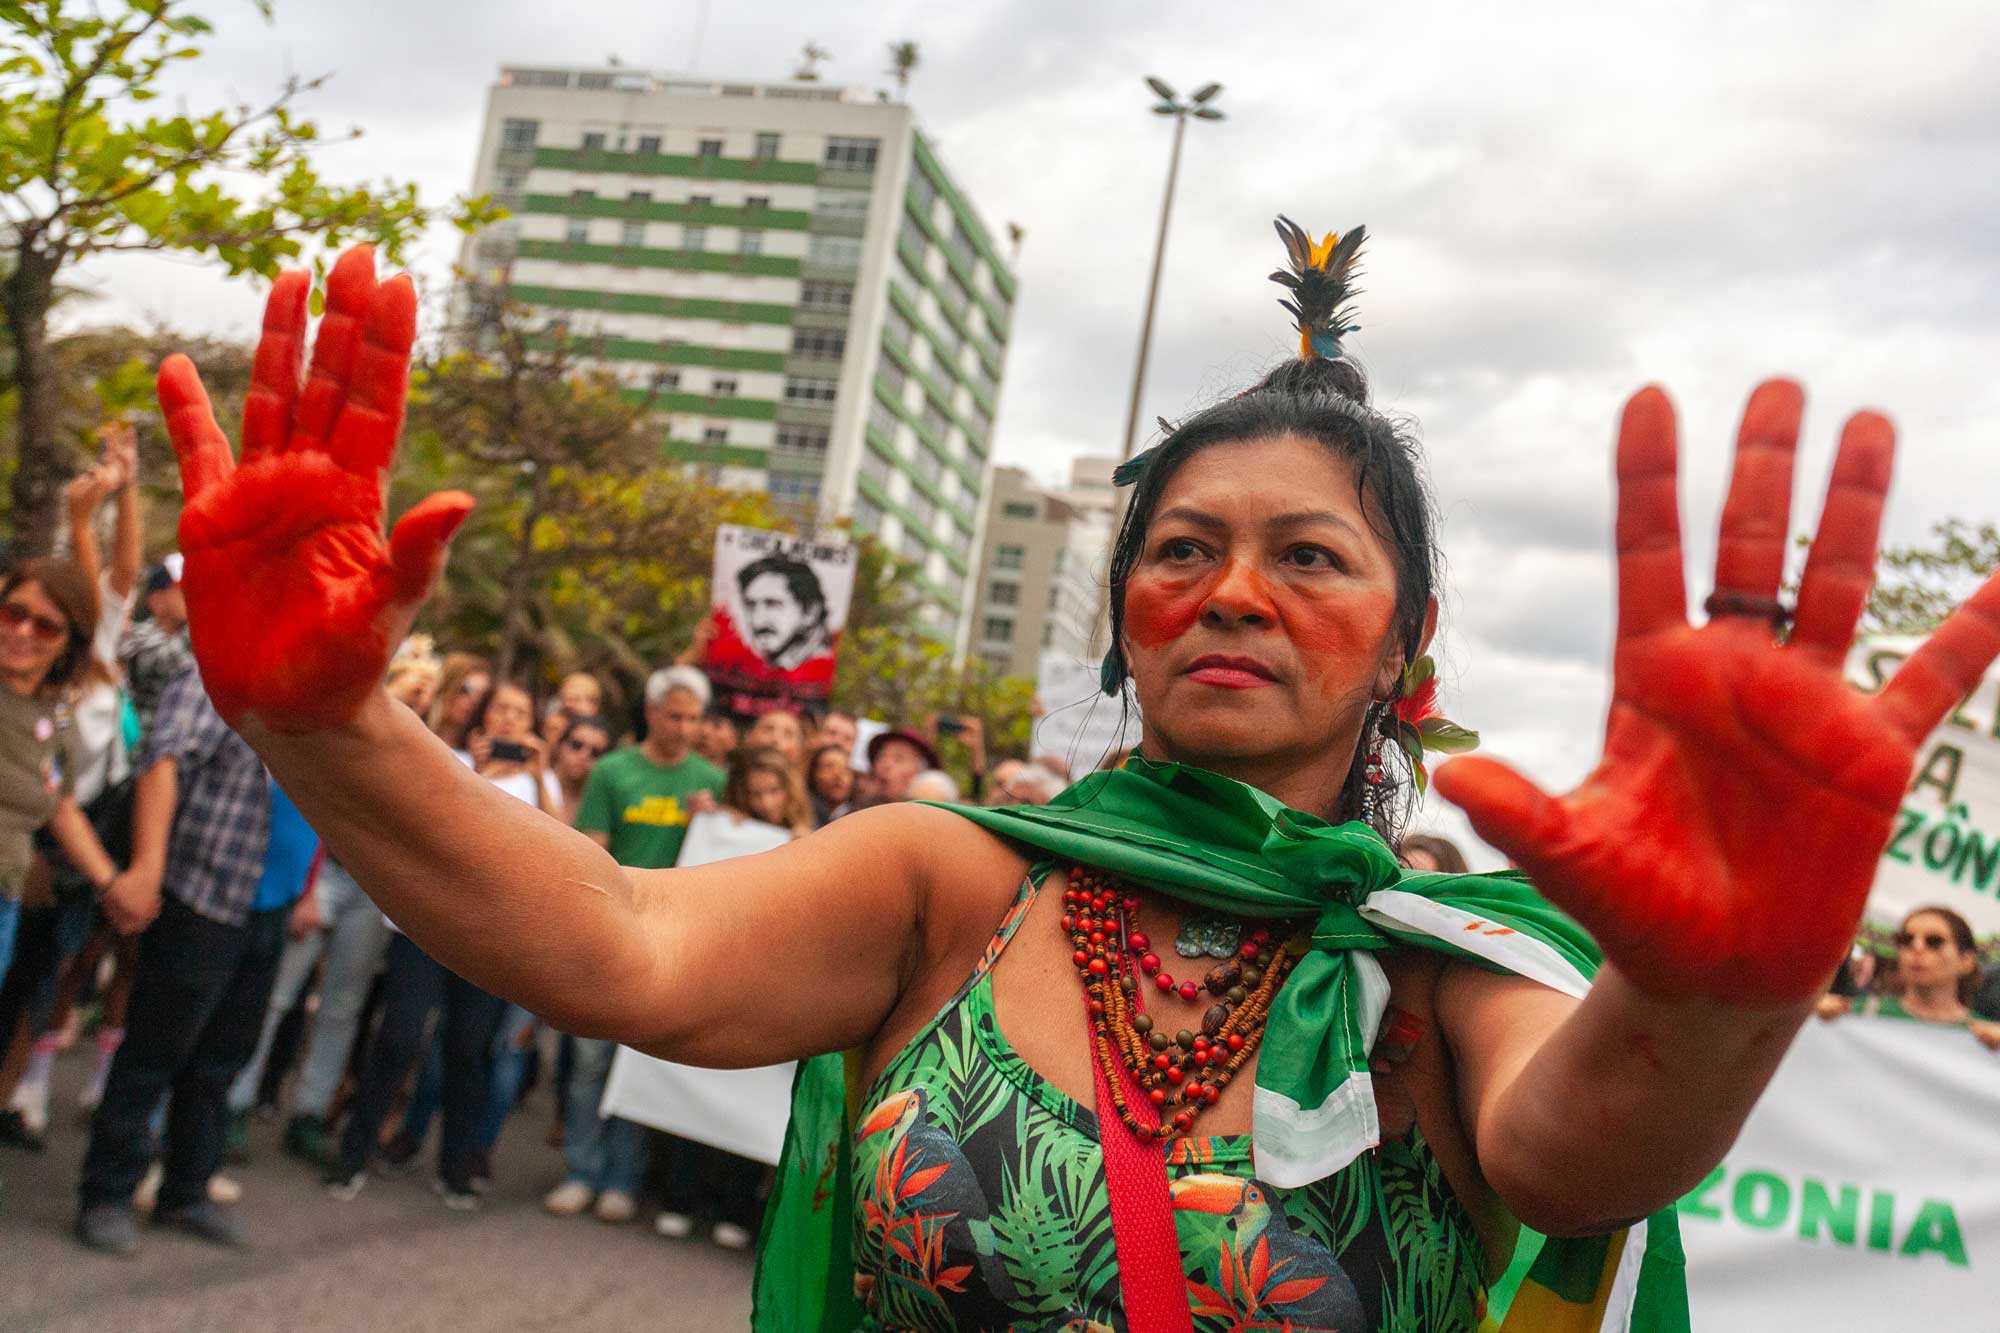 Protests in Brazil to denounce the indiscriminate burning in the Amazon. Photo: rodrigo_jorda/Shutterstock